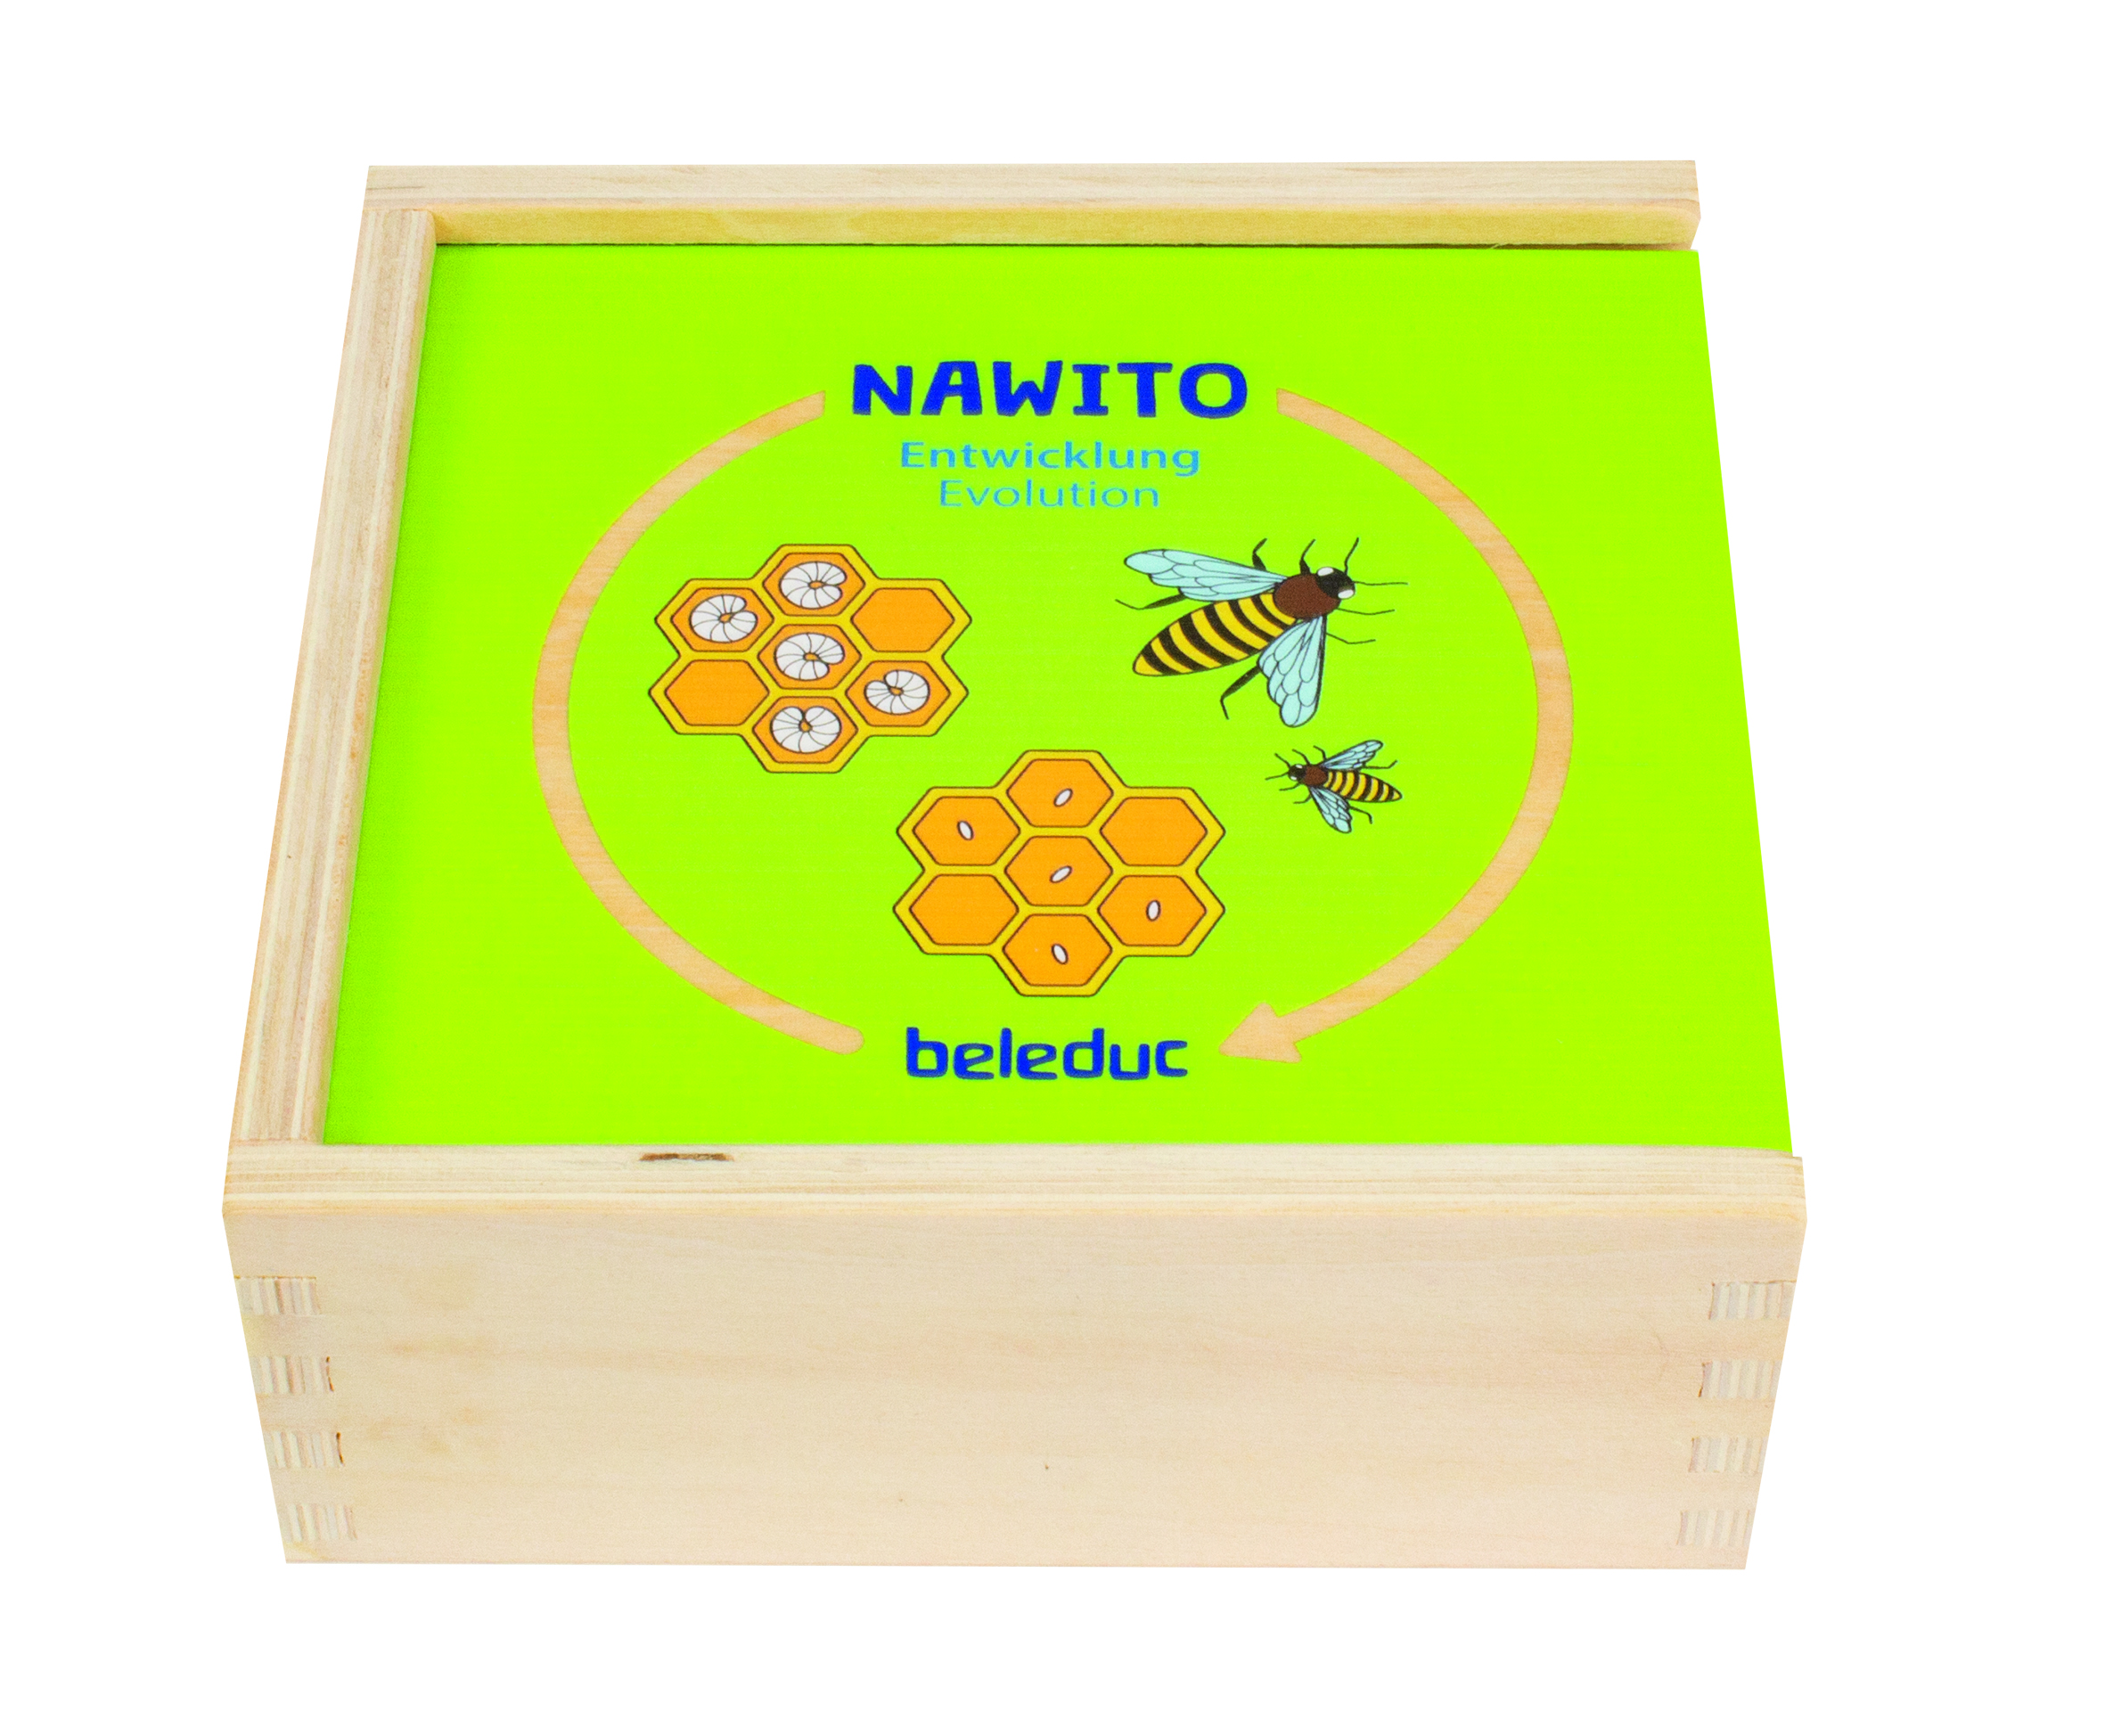 NAWITO Entwicklung - Naturwissenschaft im Kindergarten